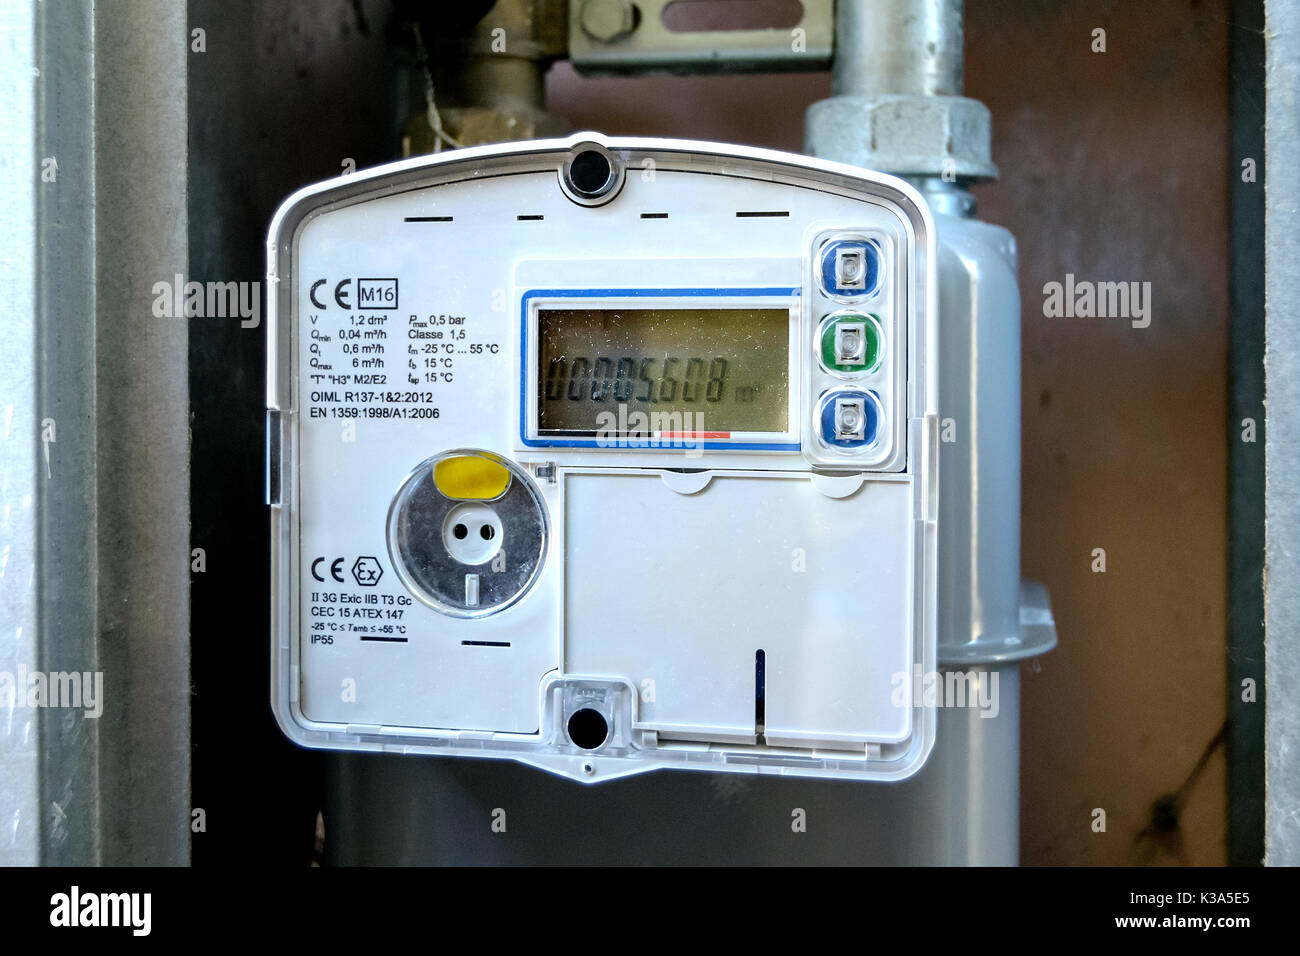 Compteur de gaz électronique - instrument qui sert à compter les mètres cubes de méthane du gaz consommé dans la maison Banque D'Images